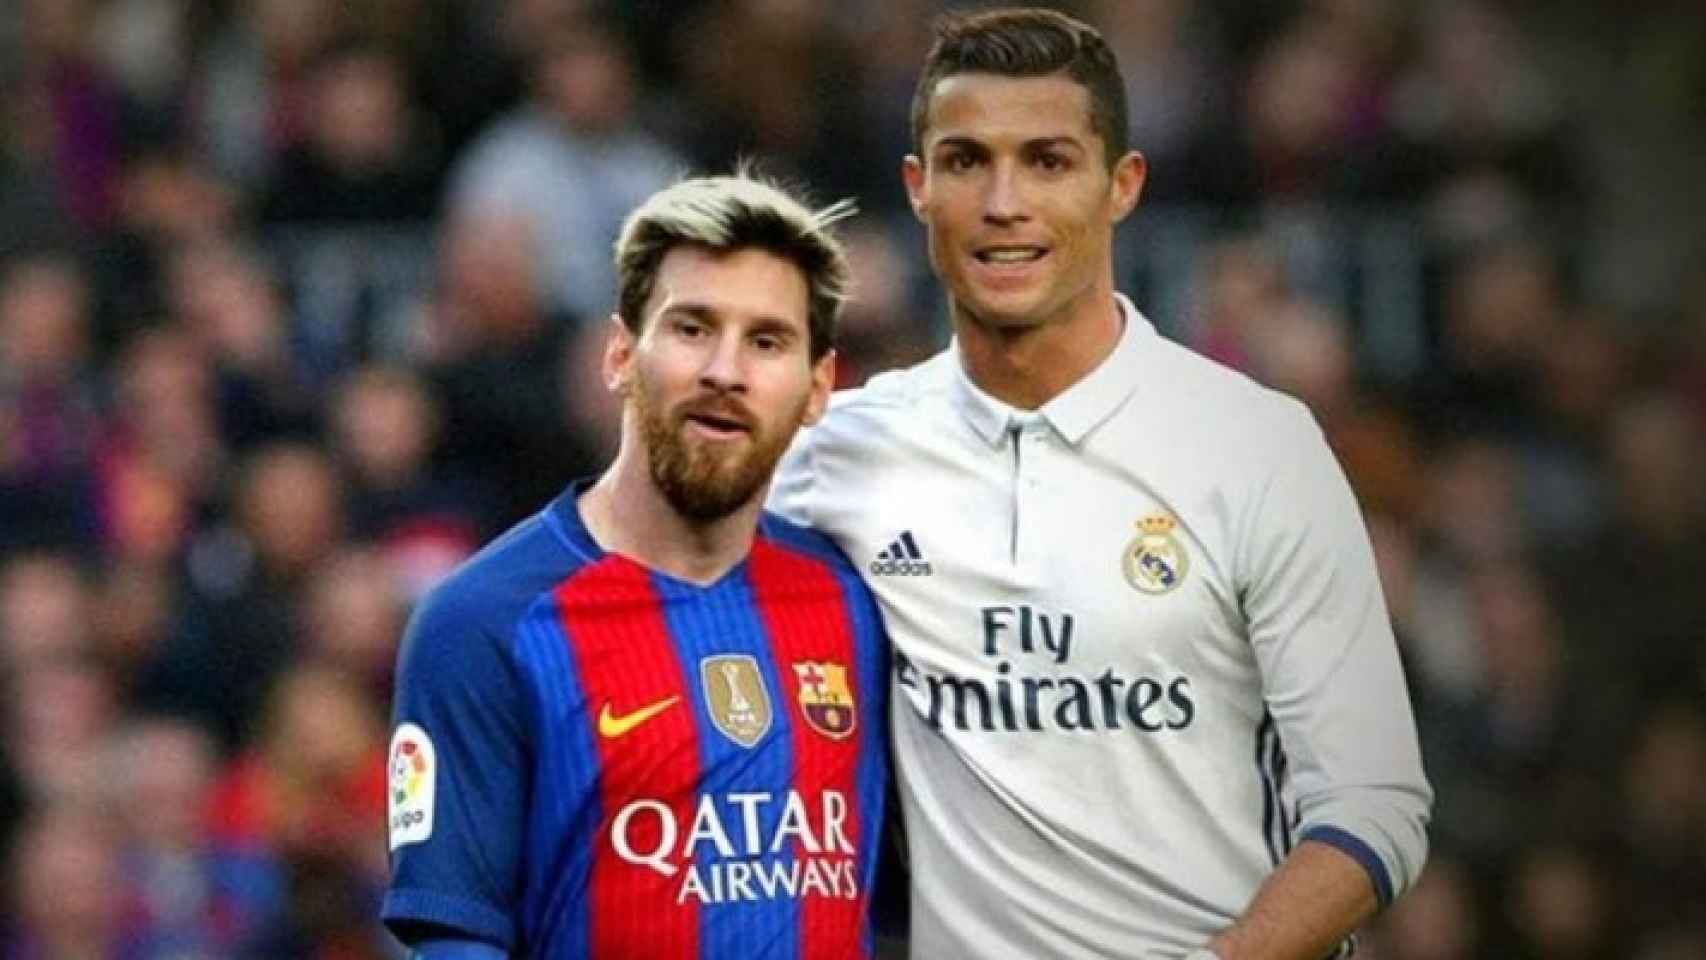 Czy Messi I Ronaldo Sie Lubią "Messi y Cristiano Ronalo pueden jugar juntos"